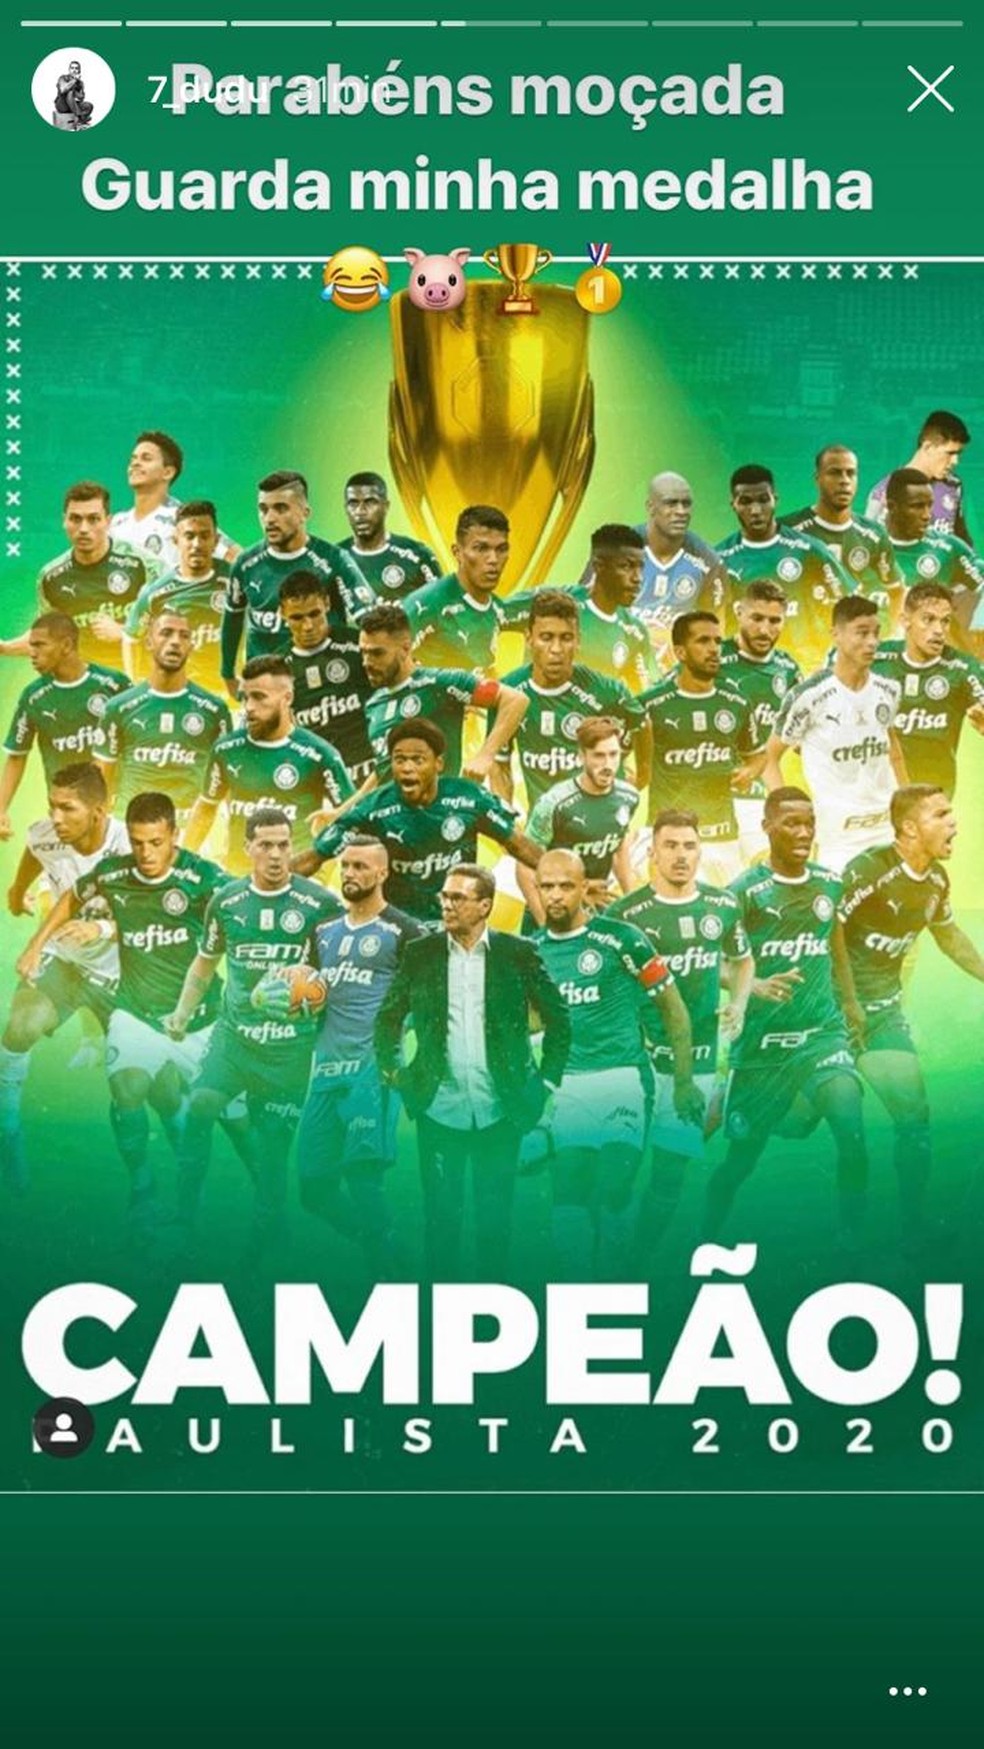 Palmeiras: 24 vezes campeão paulista com introdução de